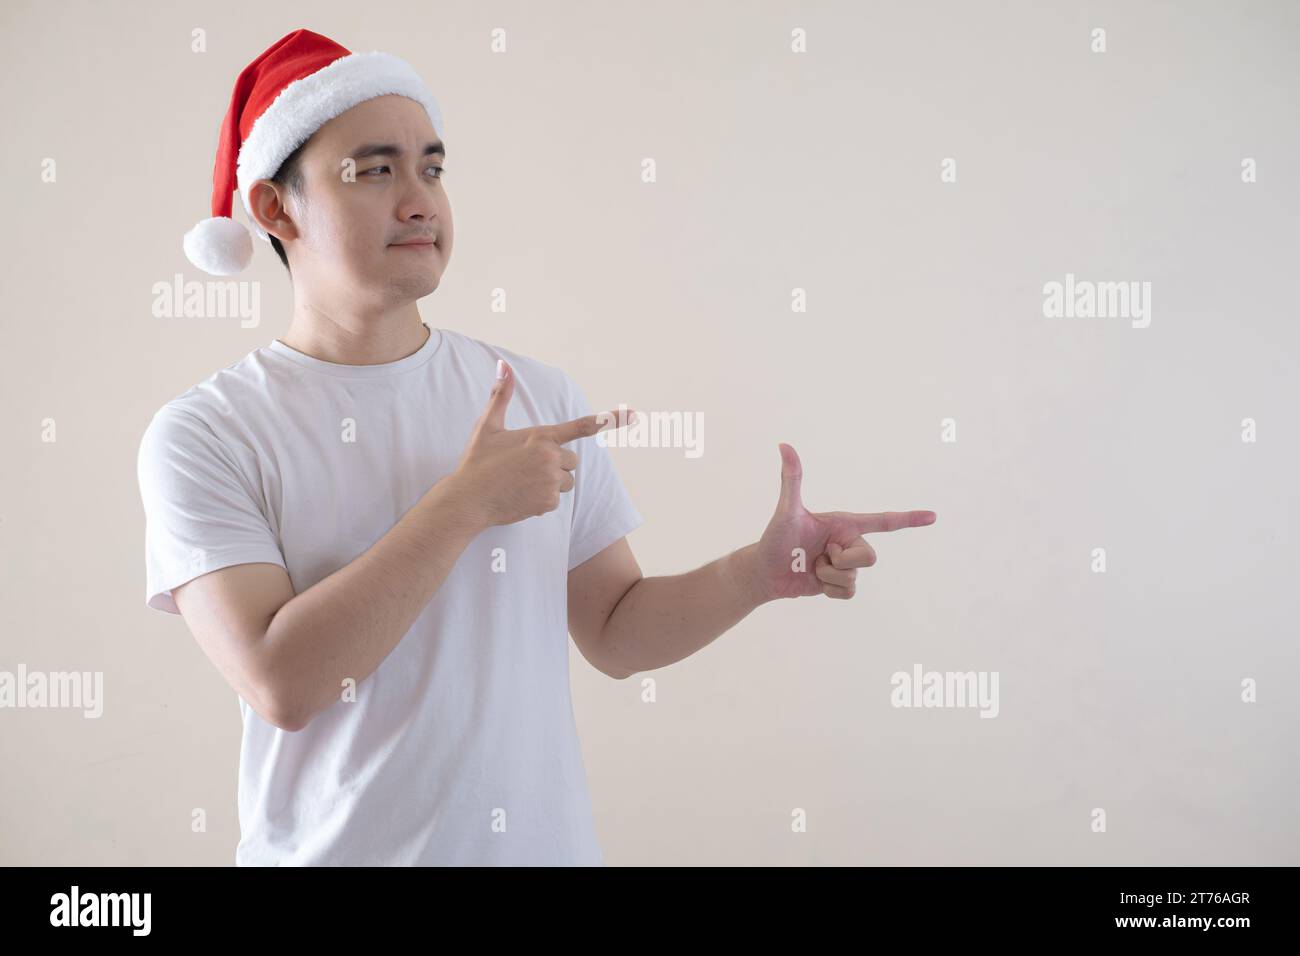 Der junge asiatische Weihnachtsmann zeigt auf isoliertem beigefarbenem Hintergrund nach rechts. Weihnachtskonzept. Stockfoto